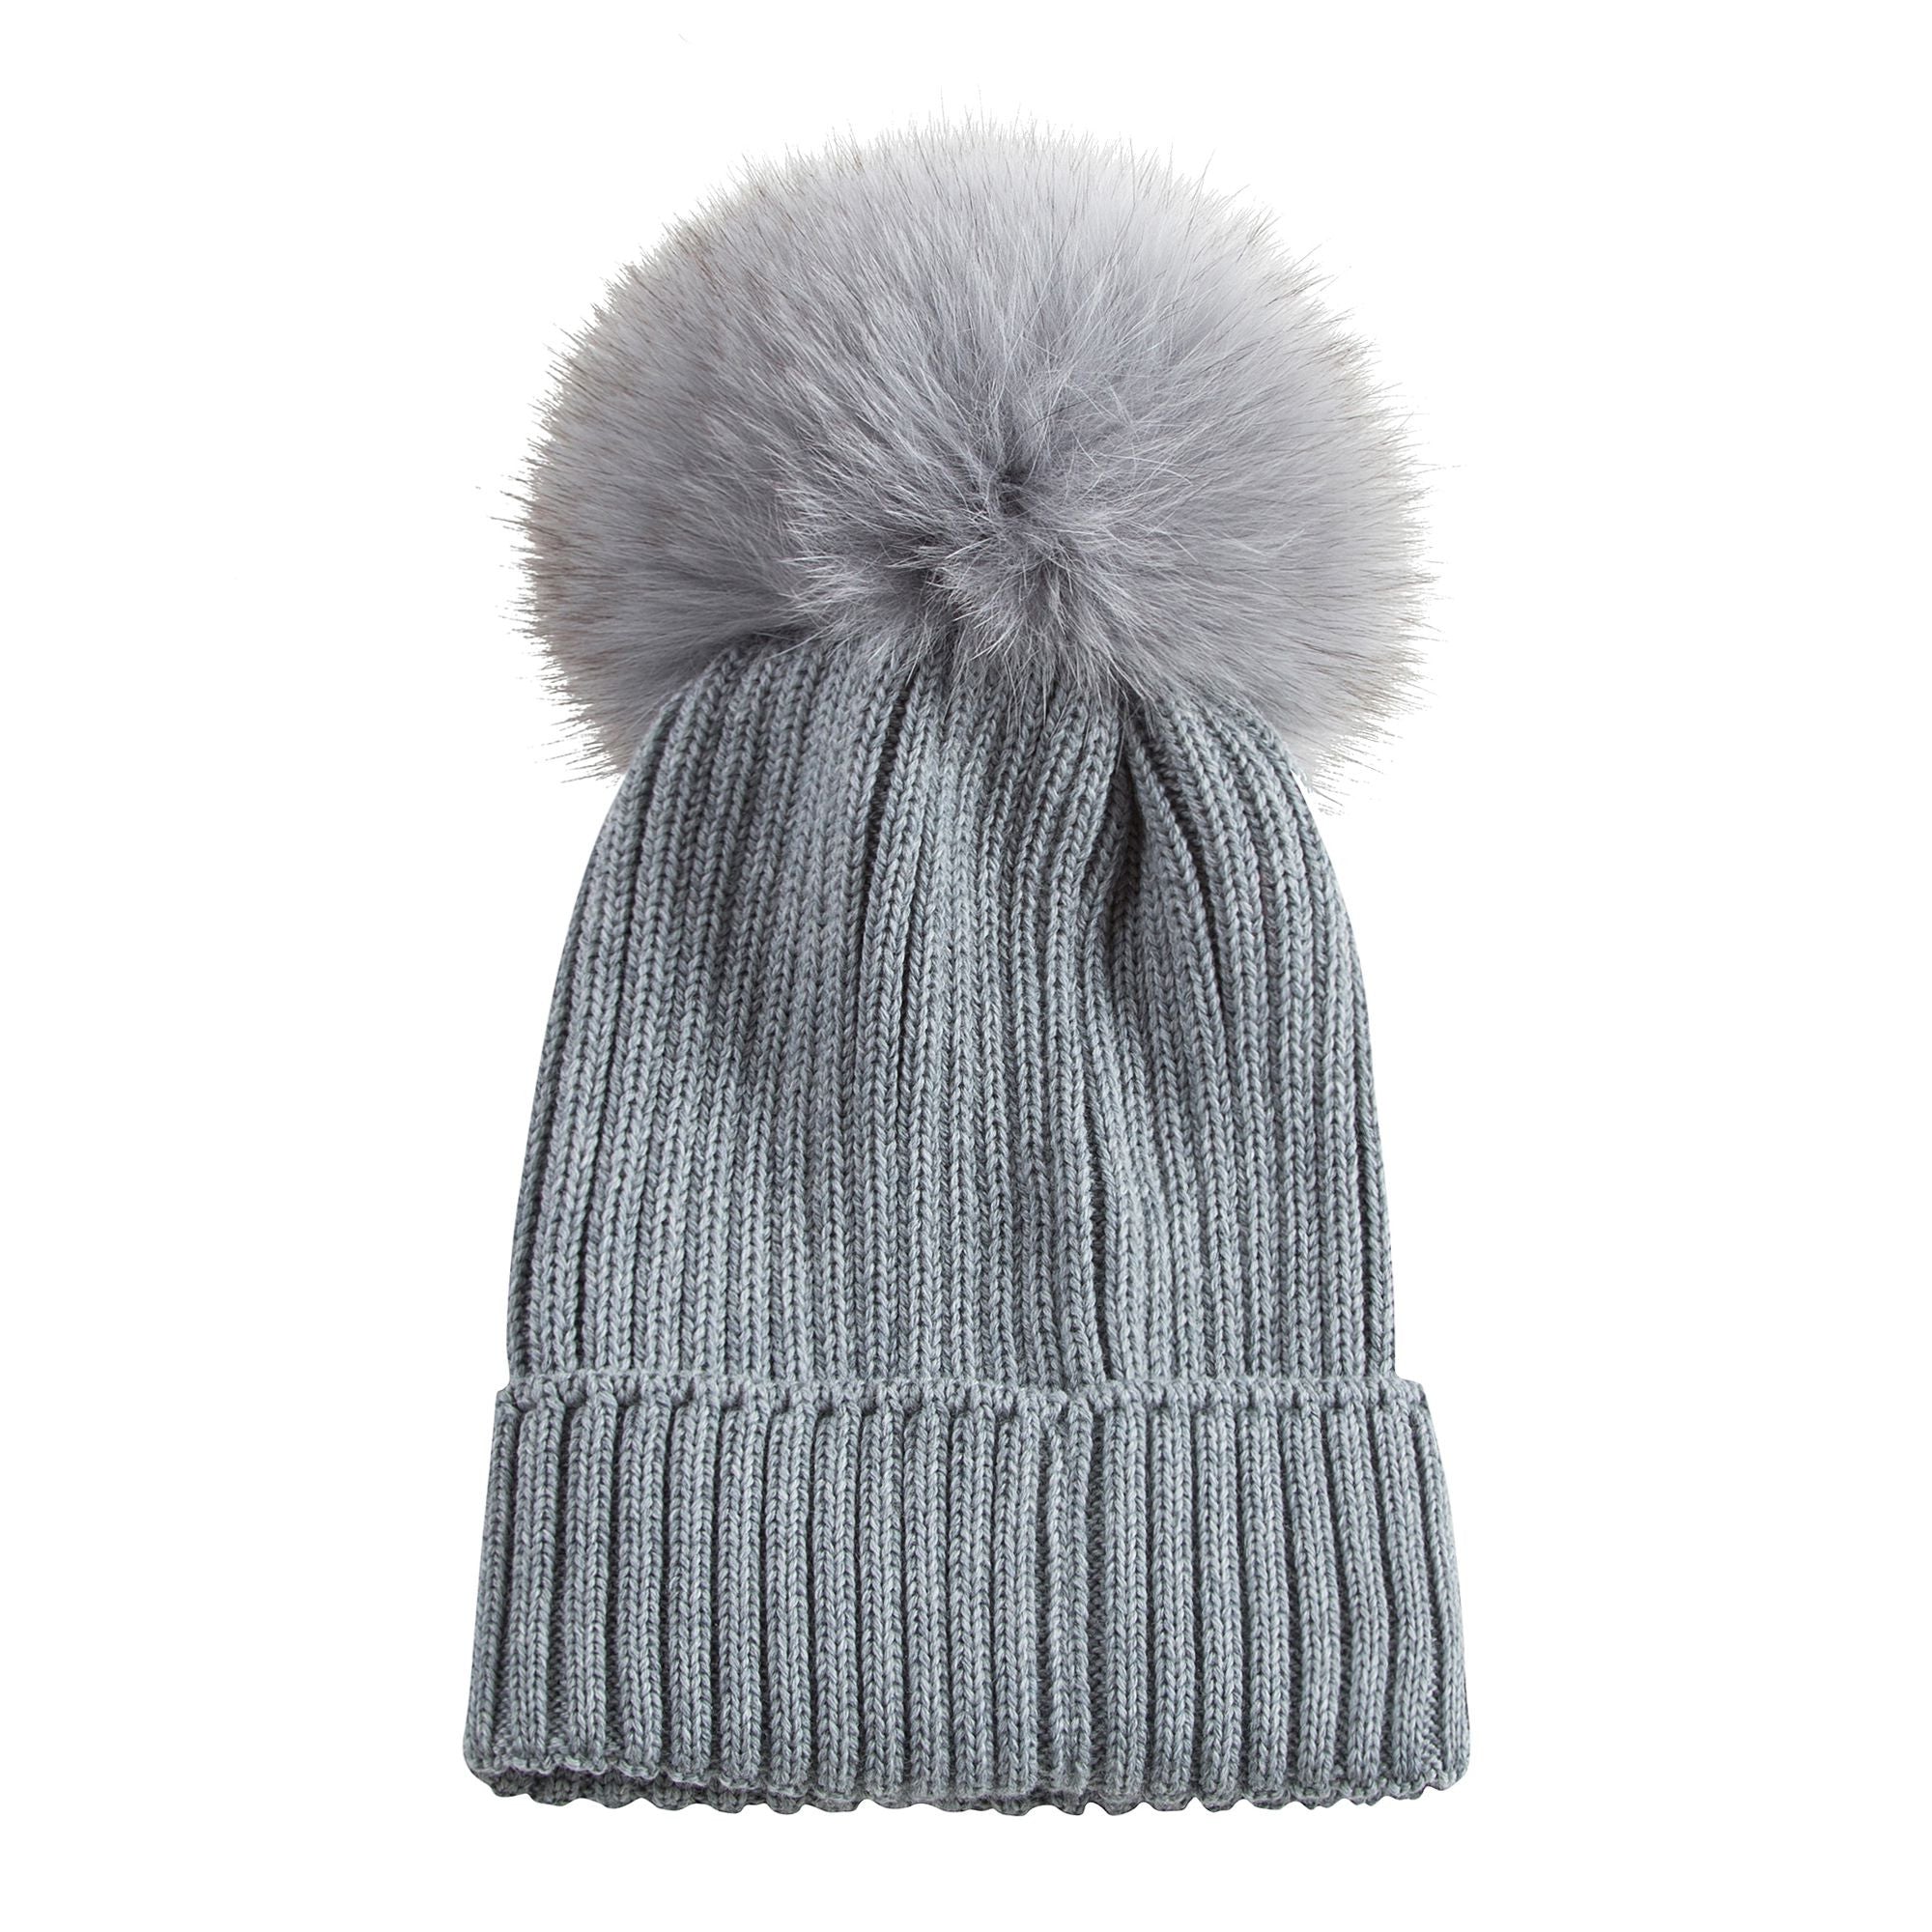 Boys & Girls Grey Knitted Hat With Fur Pom-Pom Trim